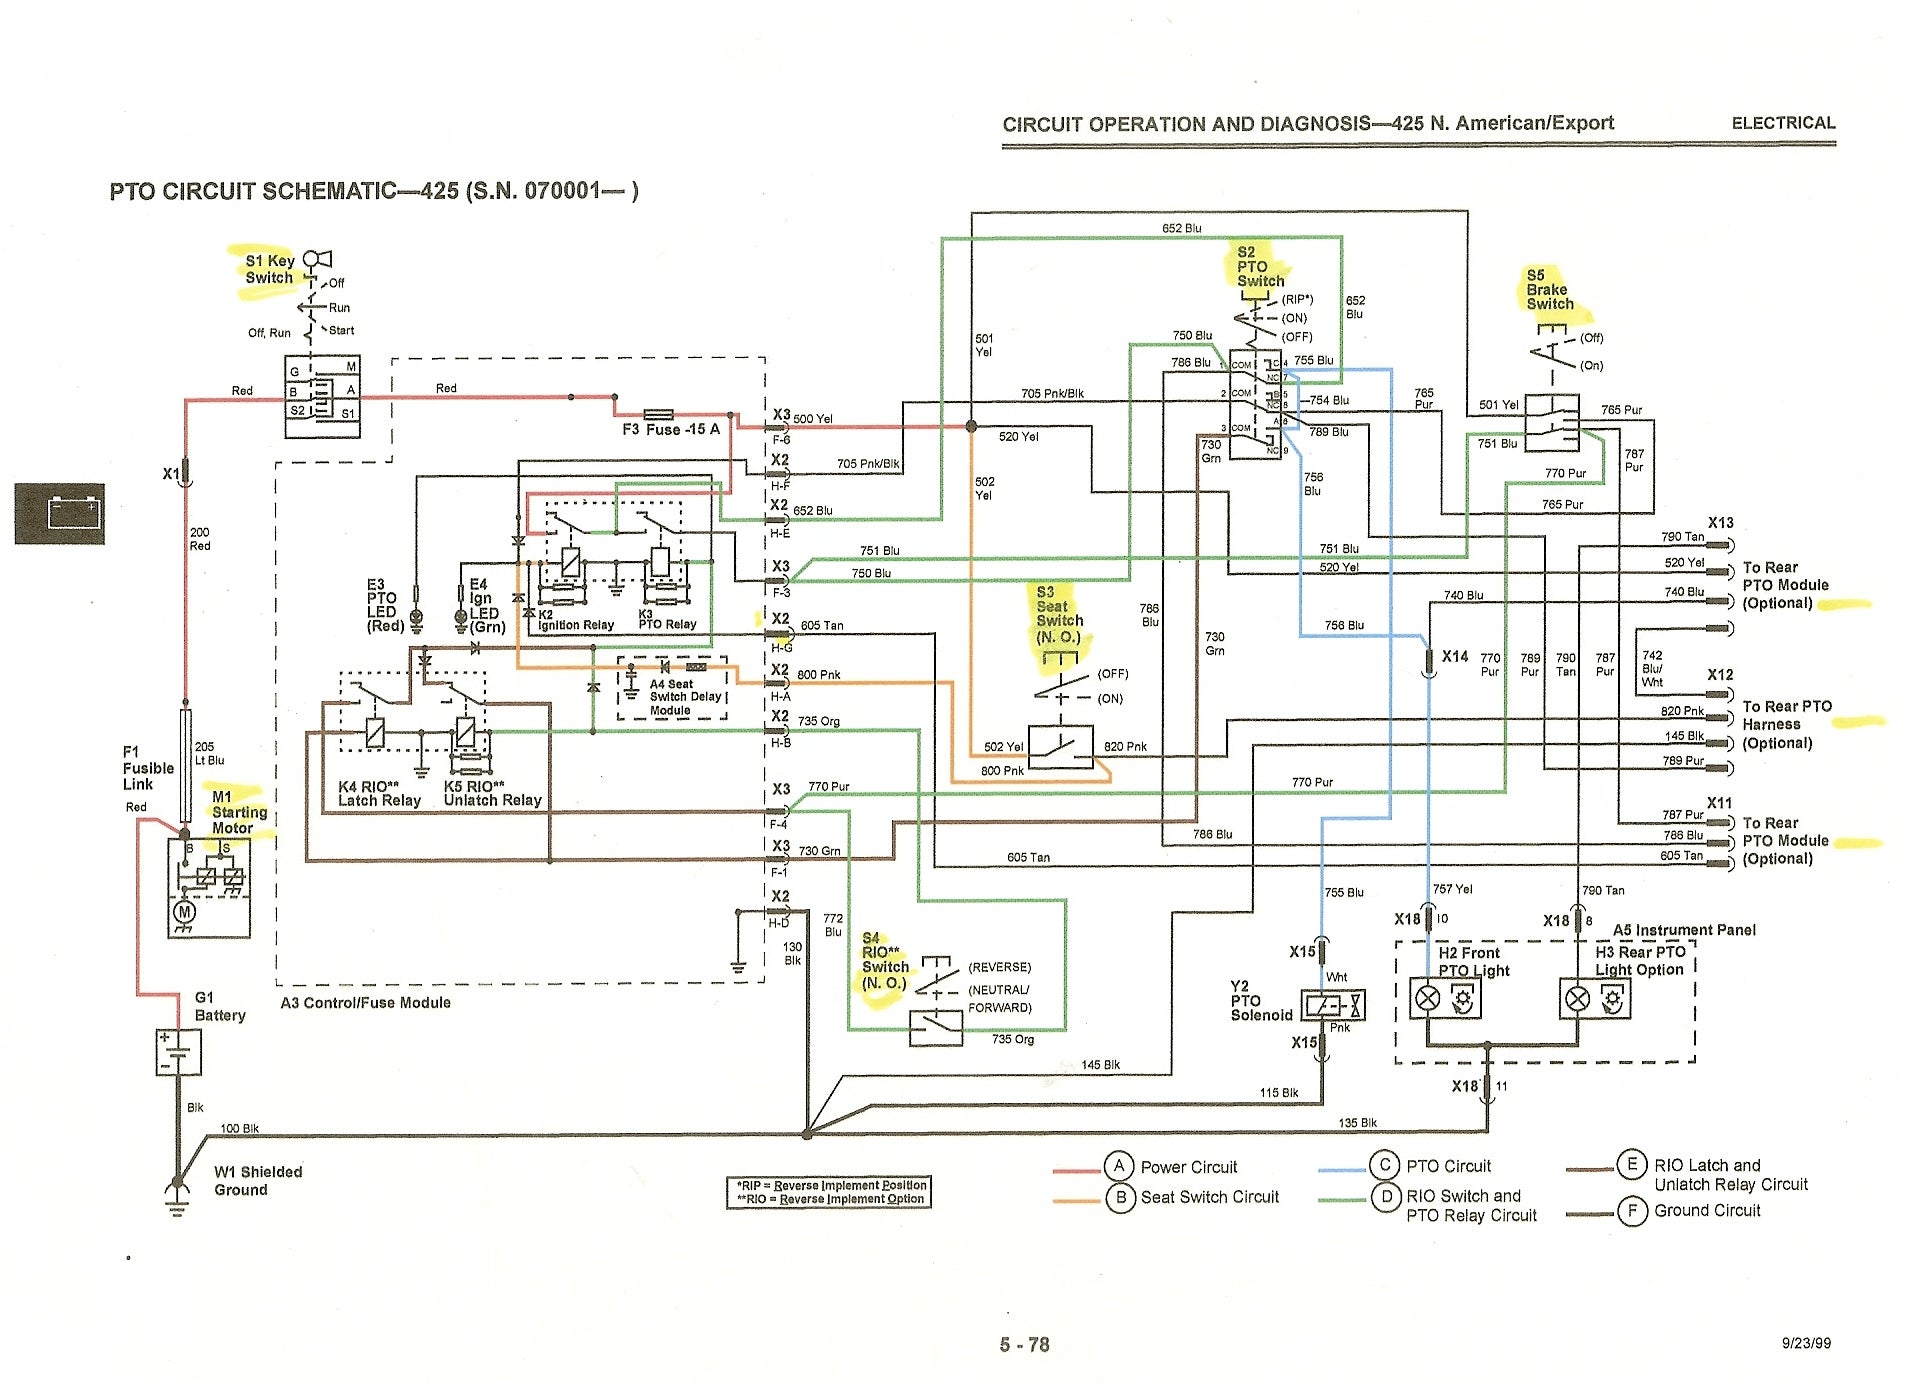 wiring diagram for 1998 john deere 425 for starter and solenoid